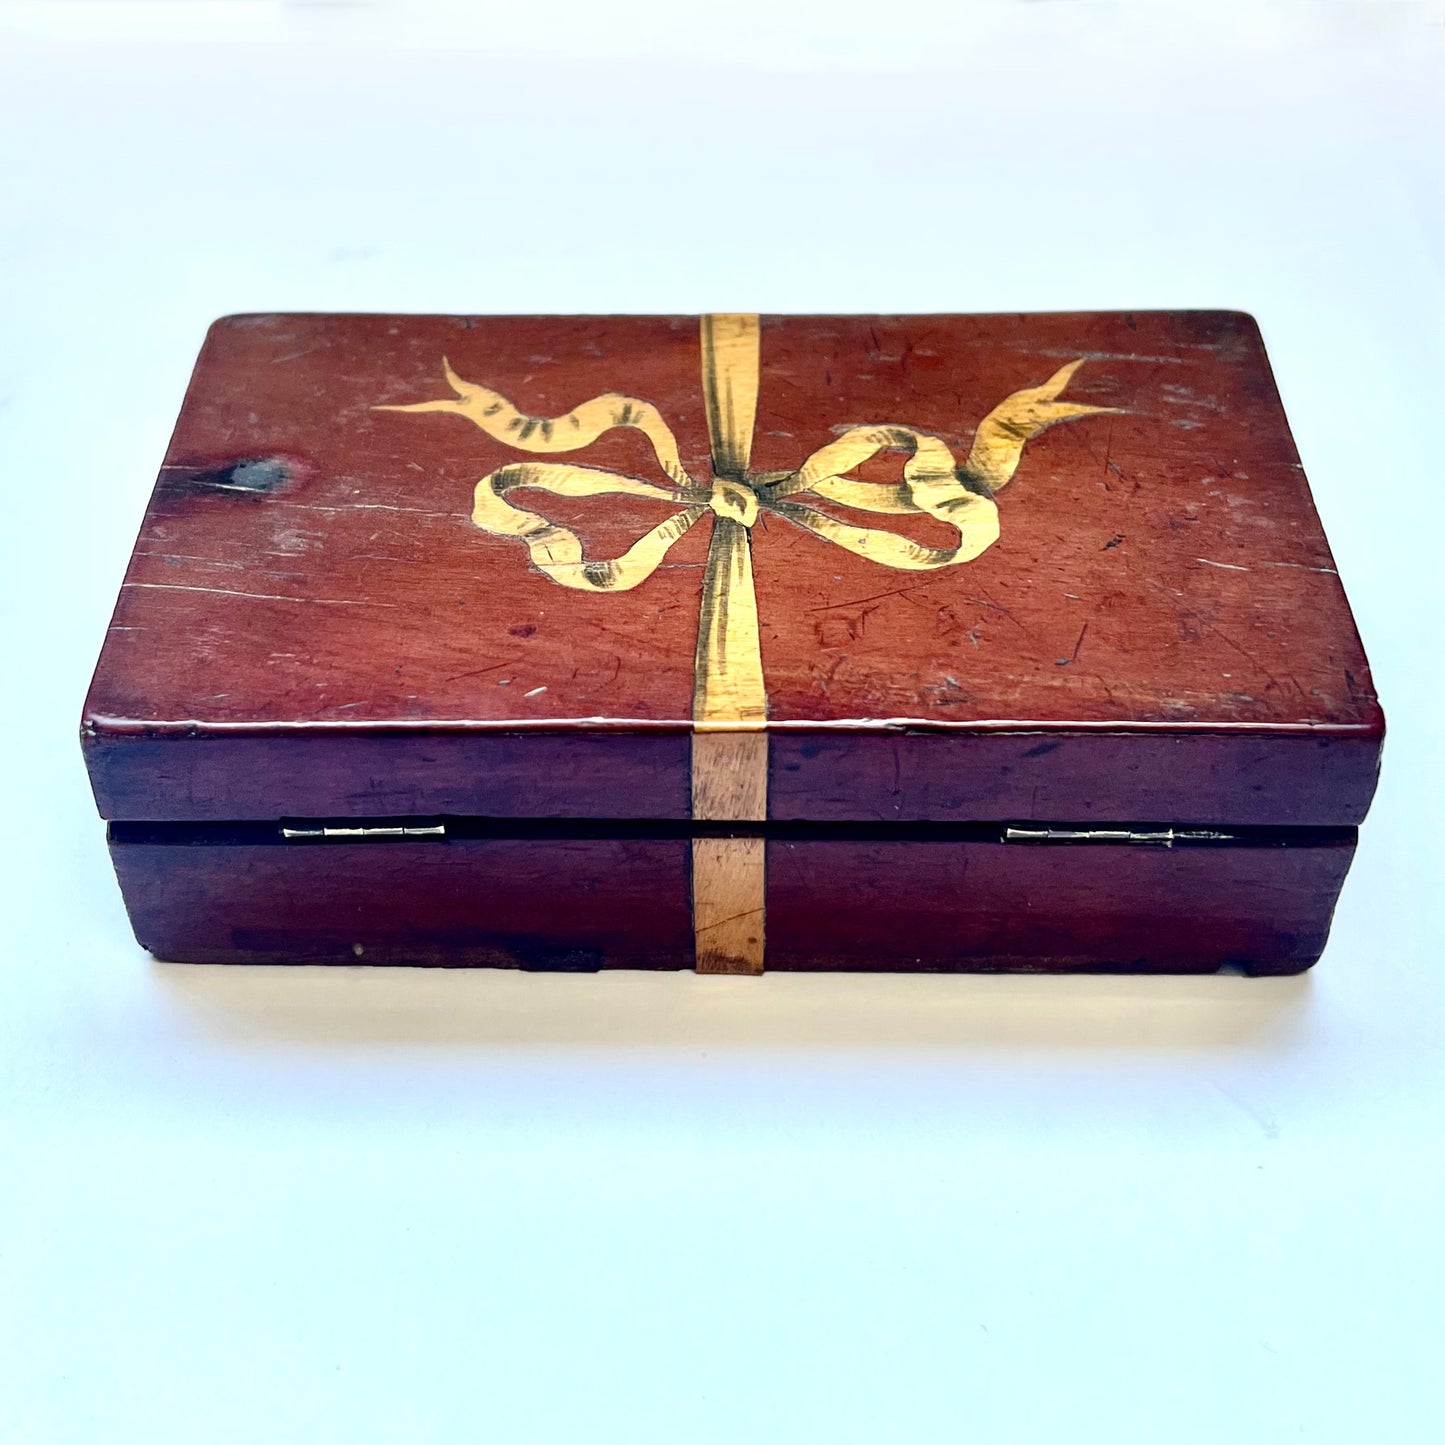 古董英国木制陶器盒，带有独特的镶嵌错视蝴蝶结图案，乔治亚时期至维多利亚早期